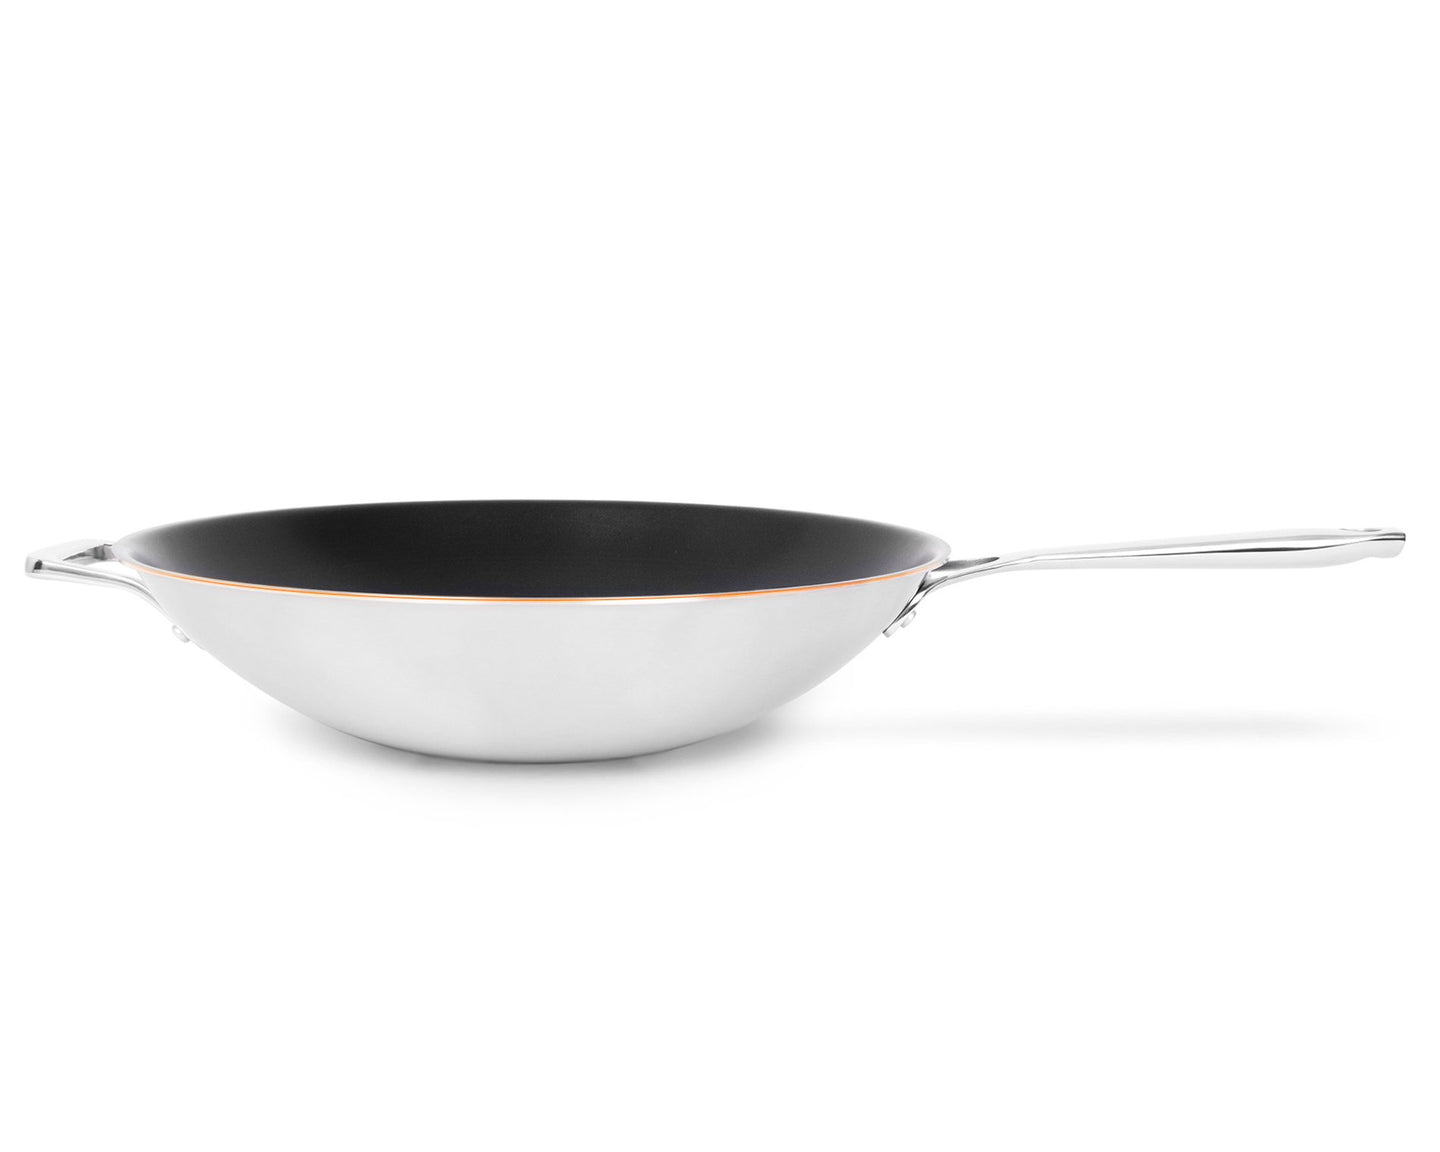 El wok con núcleo de cobre